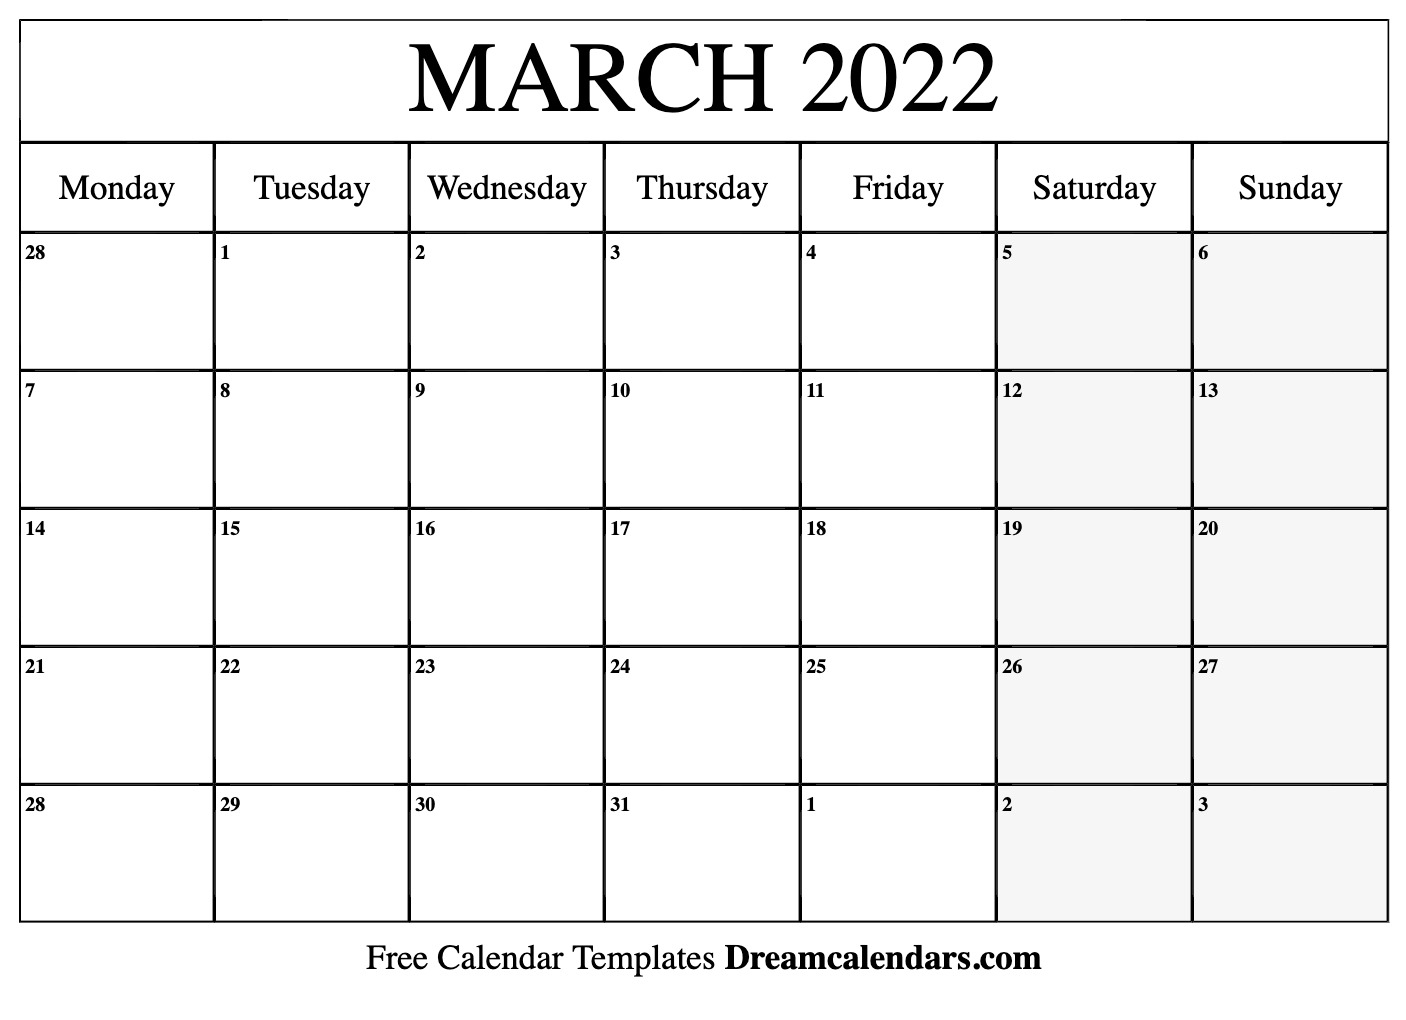 Get Lunar Calendar 2022 March